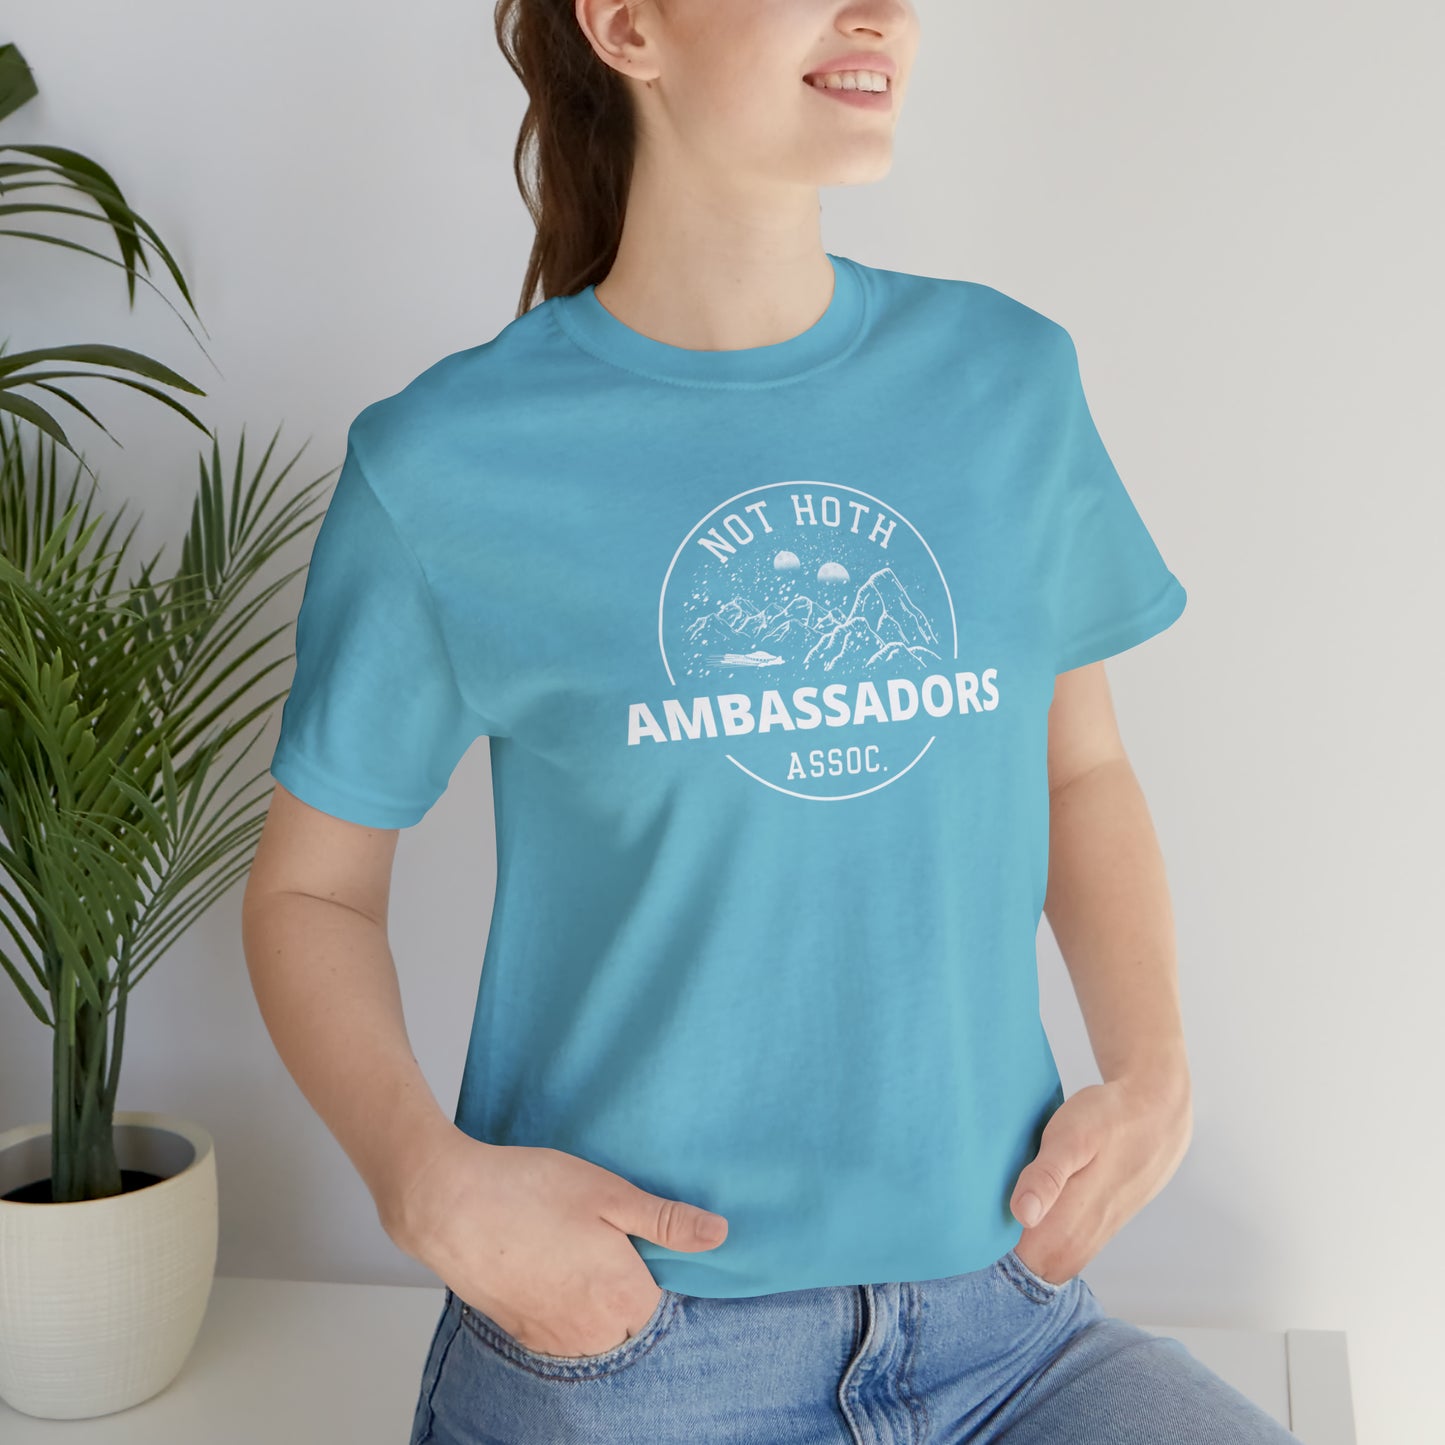 Not Hot Ambassadors Association